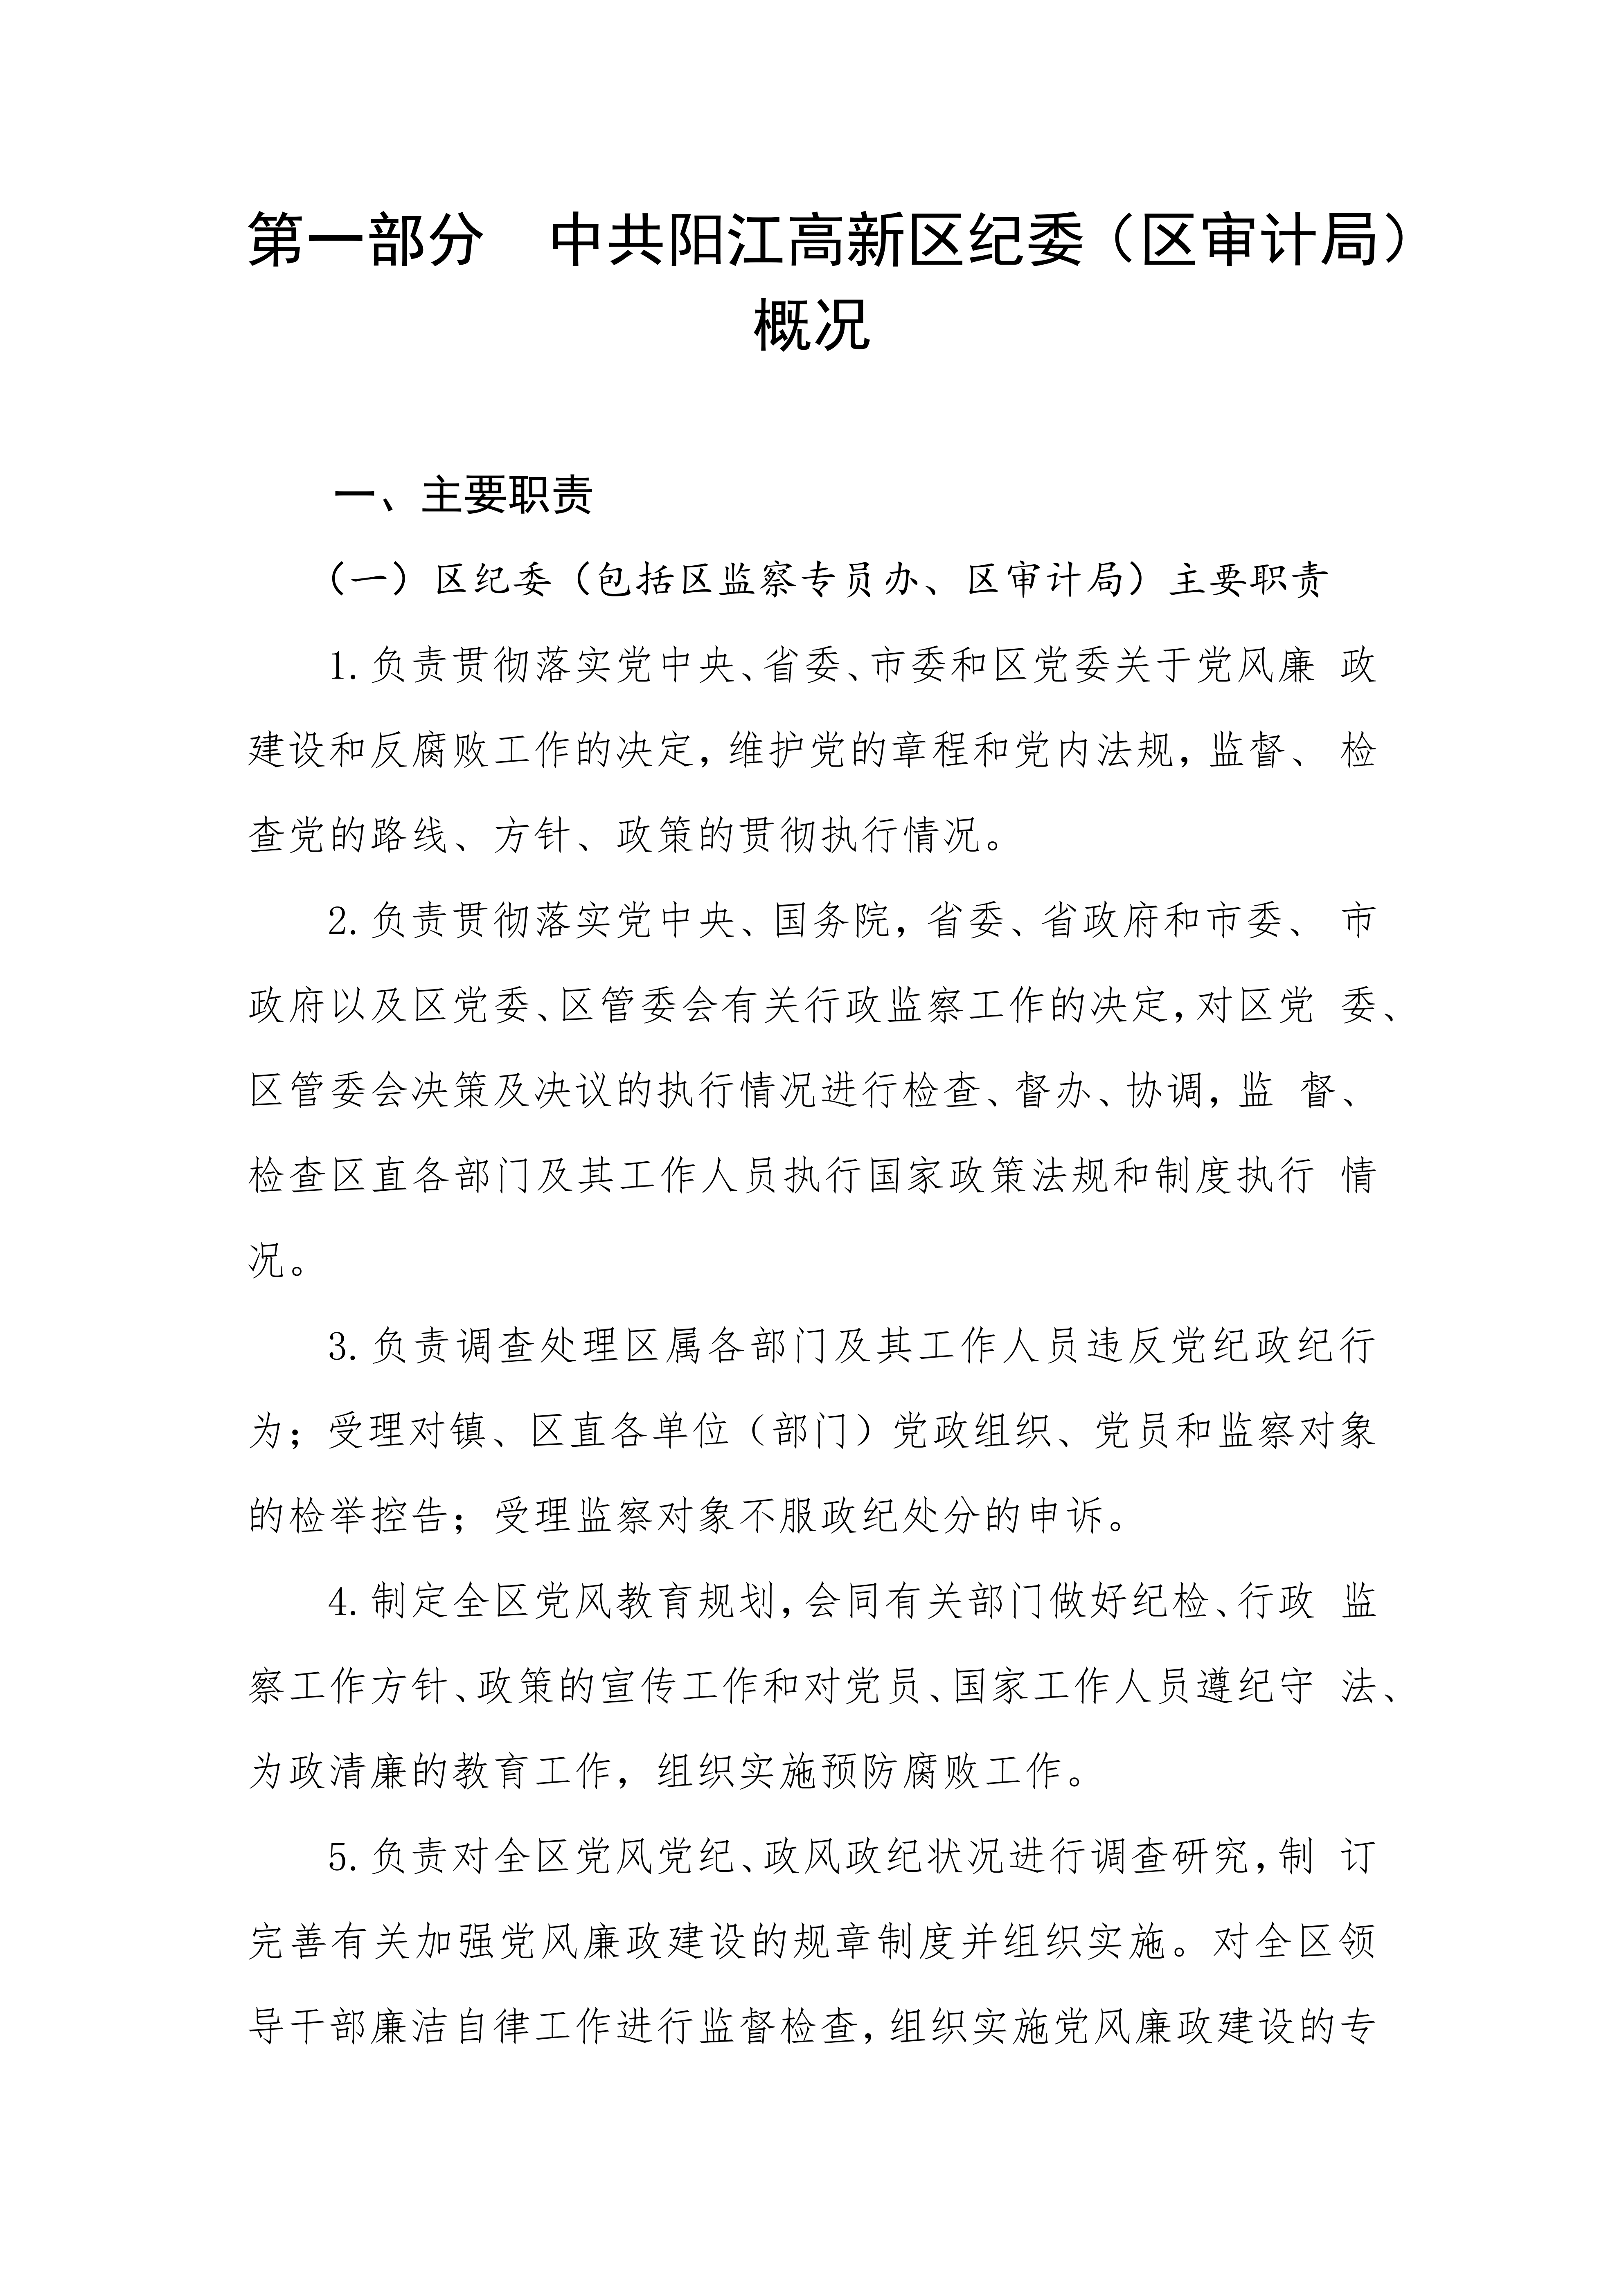 2023年中国共产党阳江高新技术产业开发区纪律检查委员会部门预算_02.png